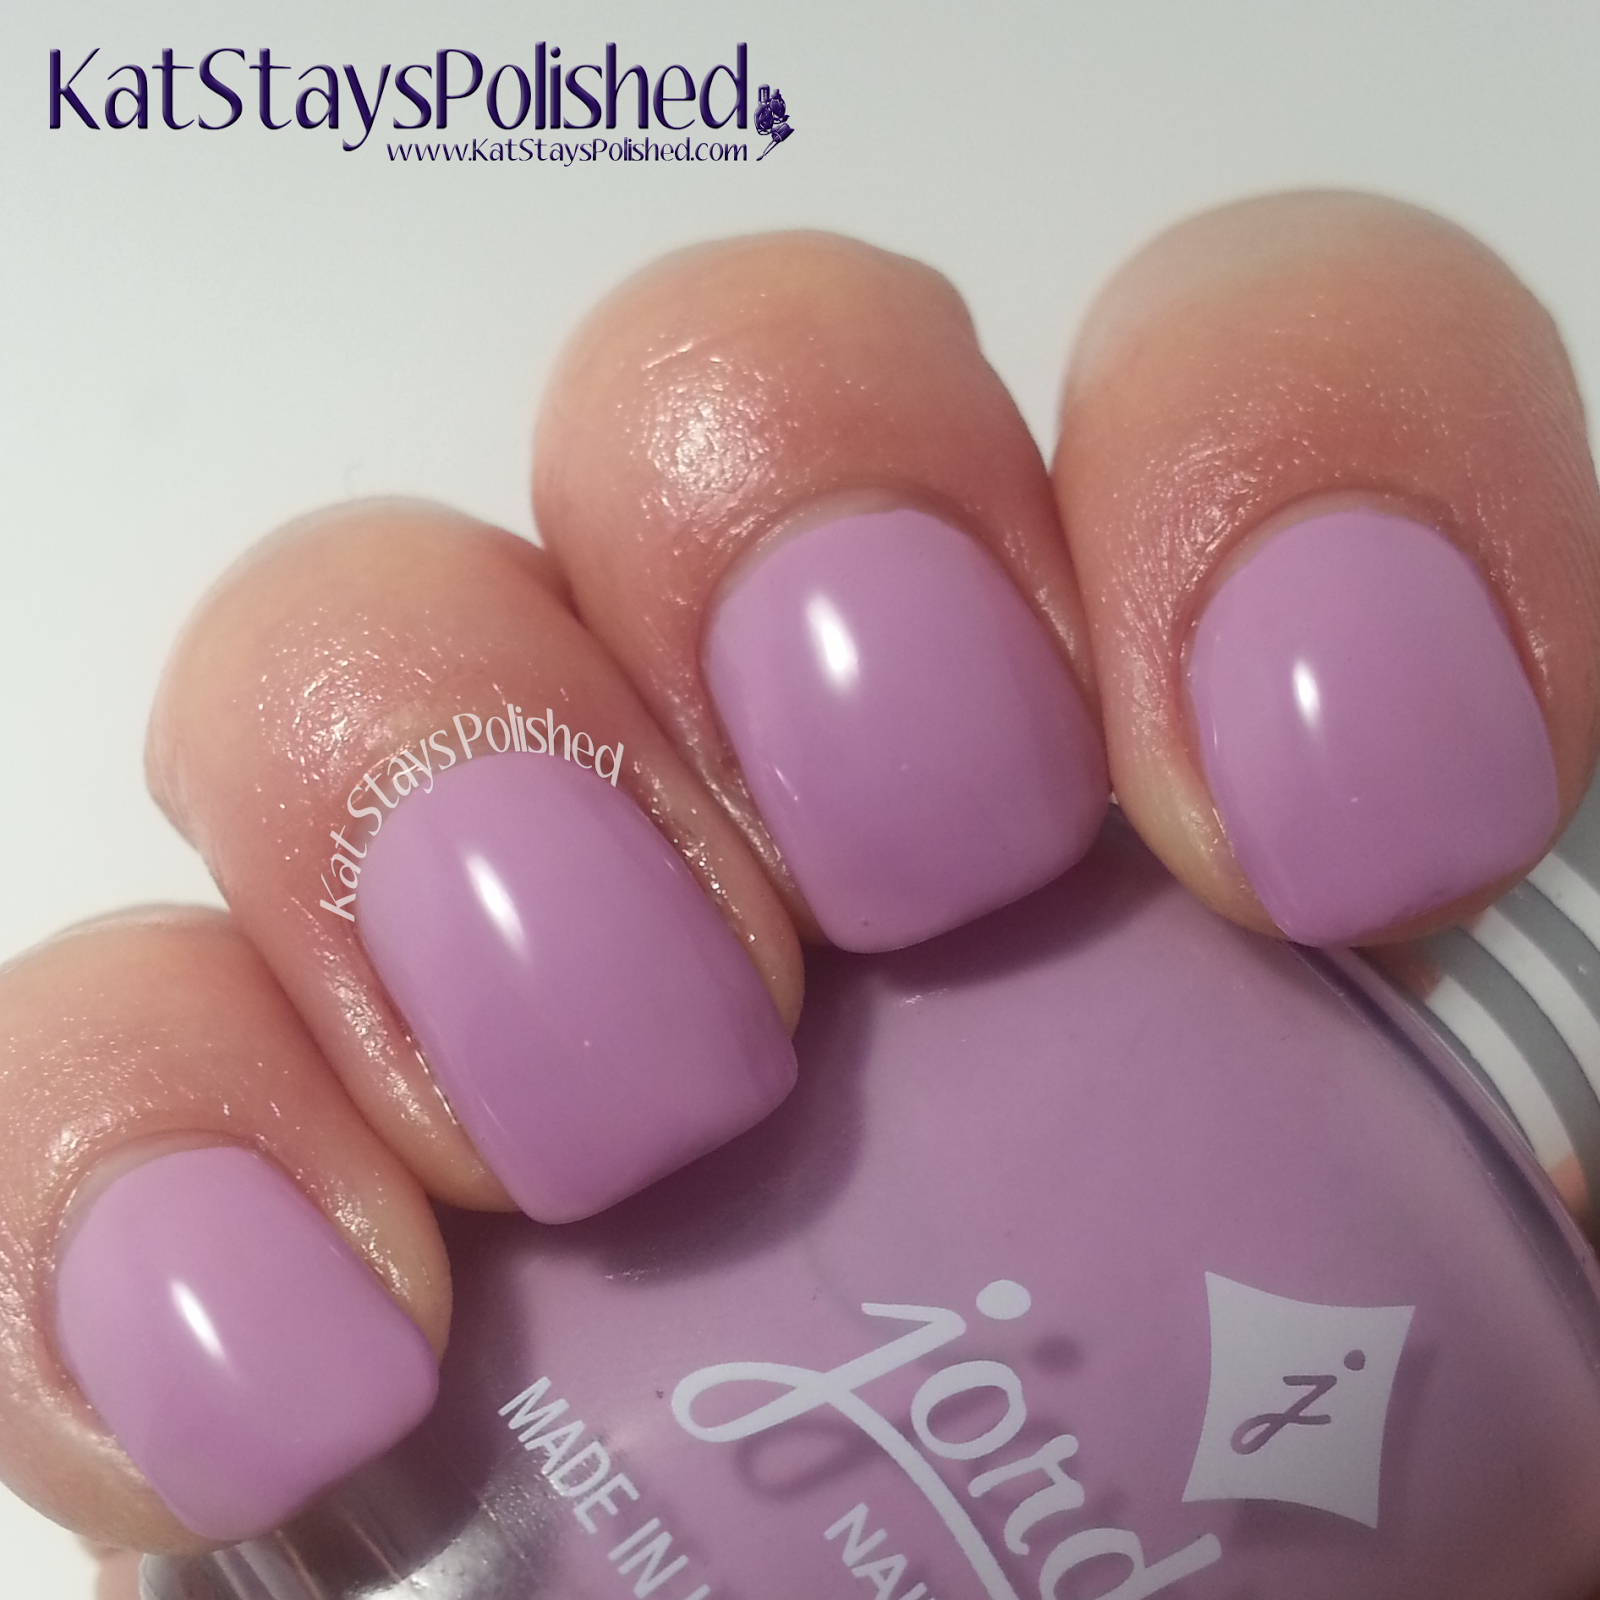 Jordana Playful Pastels - Lively Lilac | Kat Stays Polished